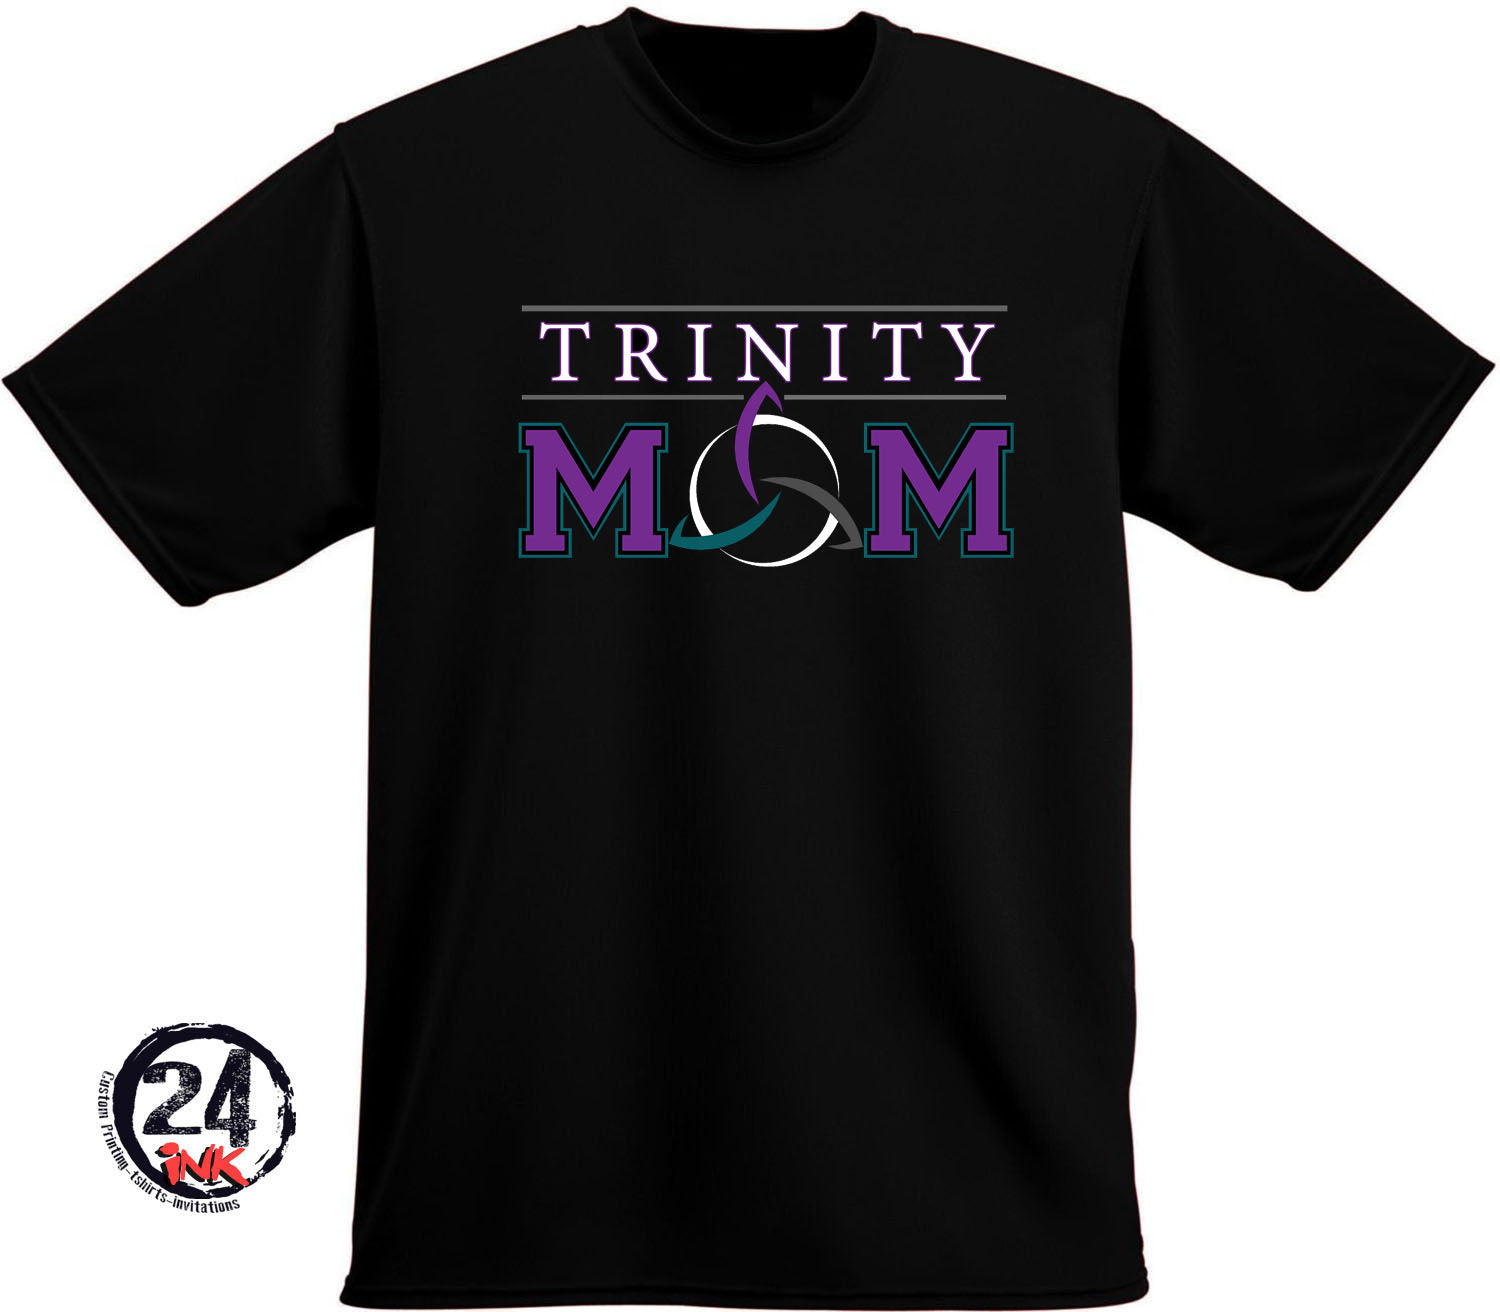 Trinity Mom T-Shirt